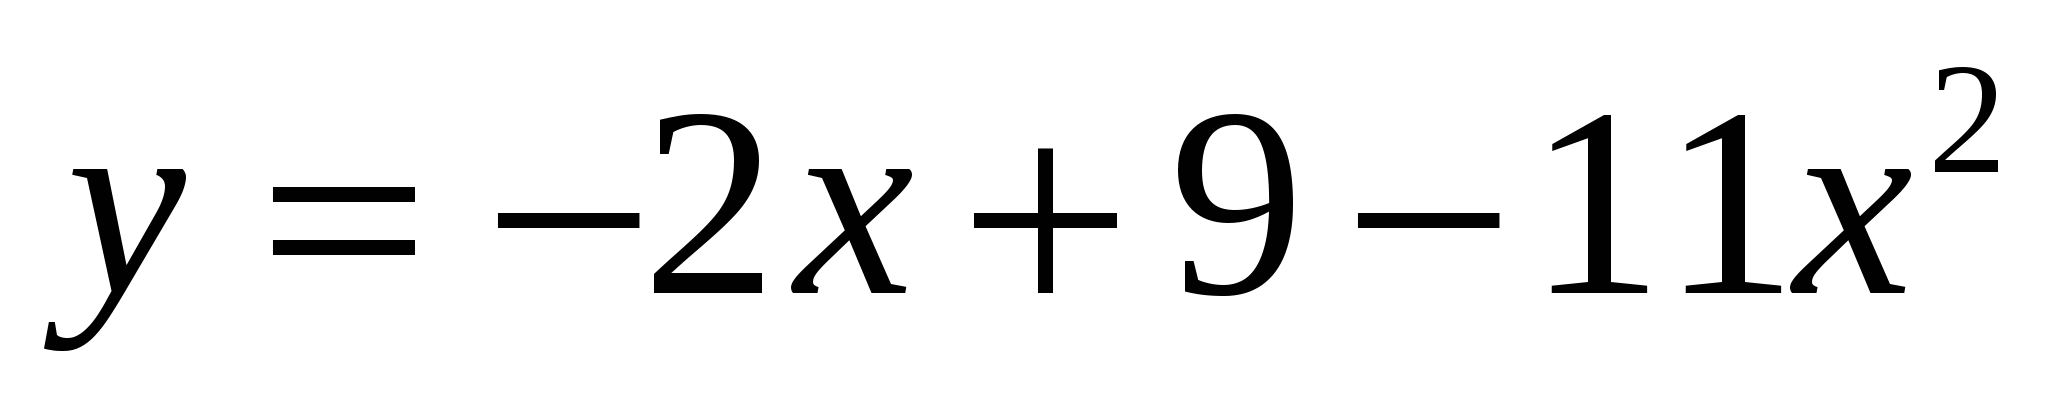 Конспект урока алгебры на тему График и свойства функции у = ах2 (9 класс) .